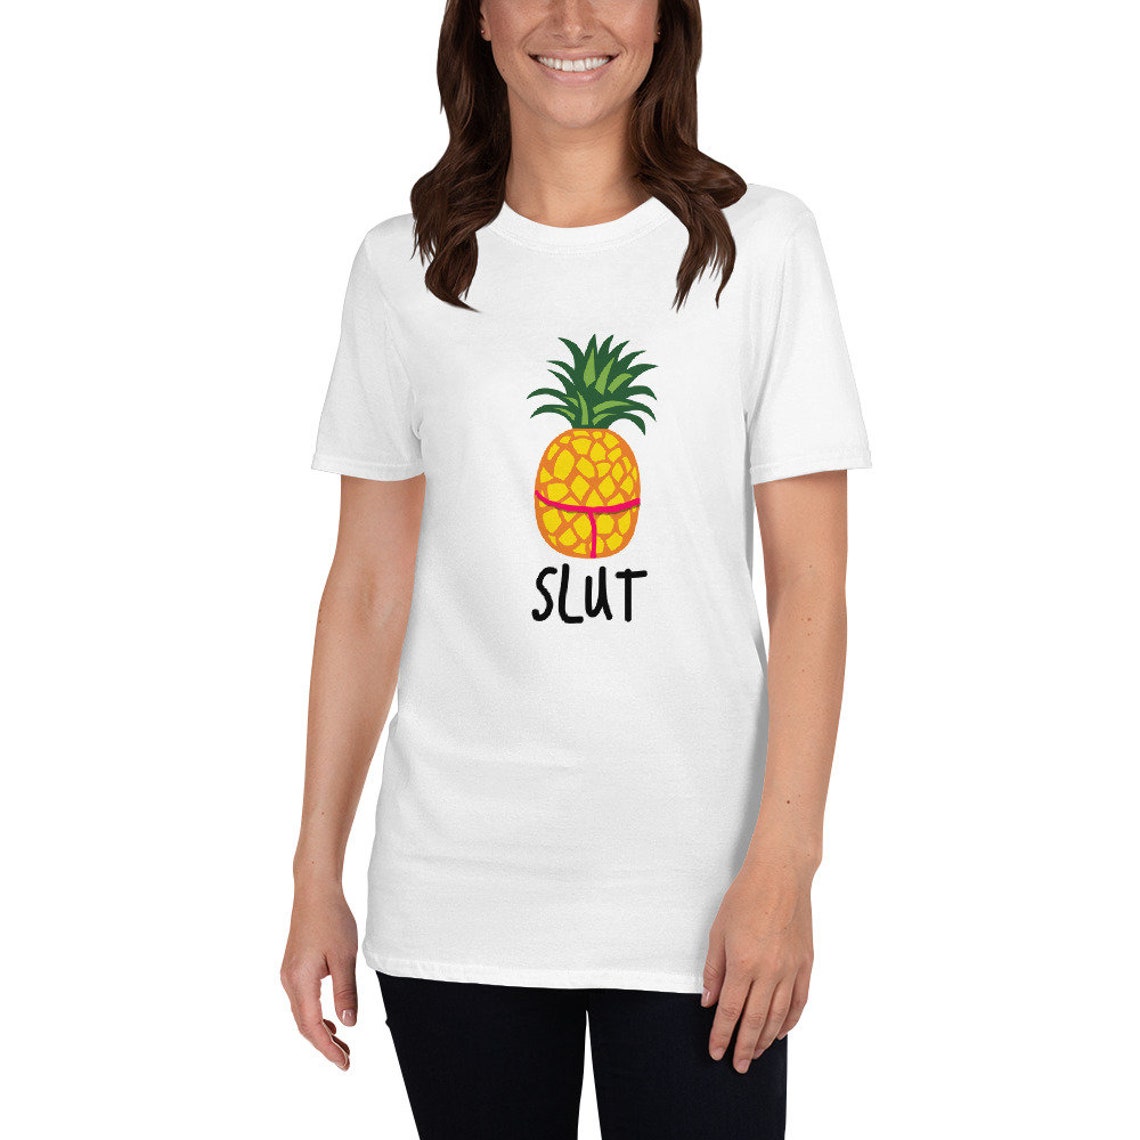 Raymond Holt Slut Pineapple T-Shirt Brooklyn Nine Nine Funny | Etsy